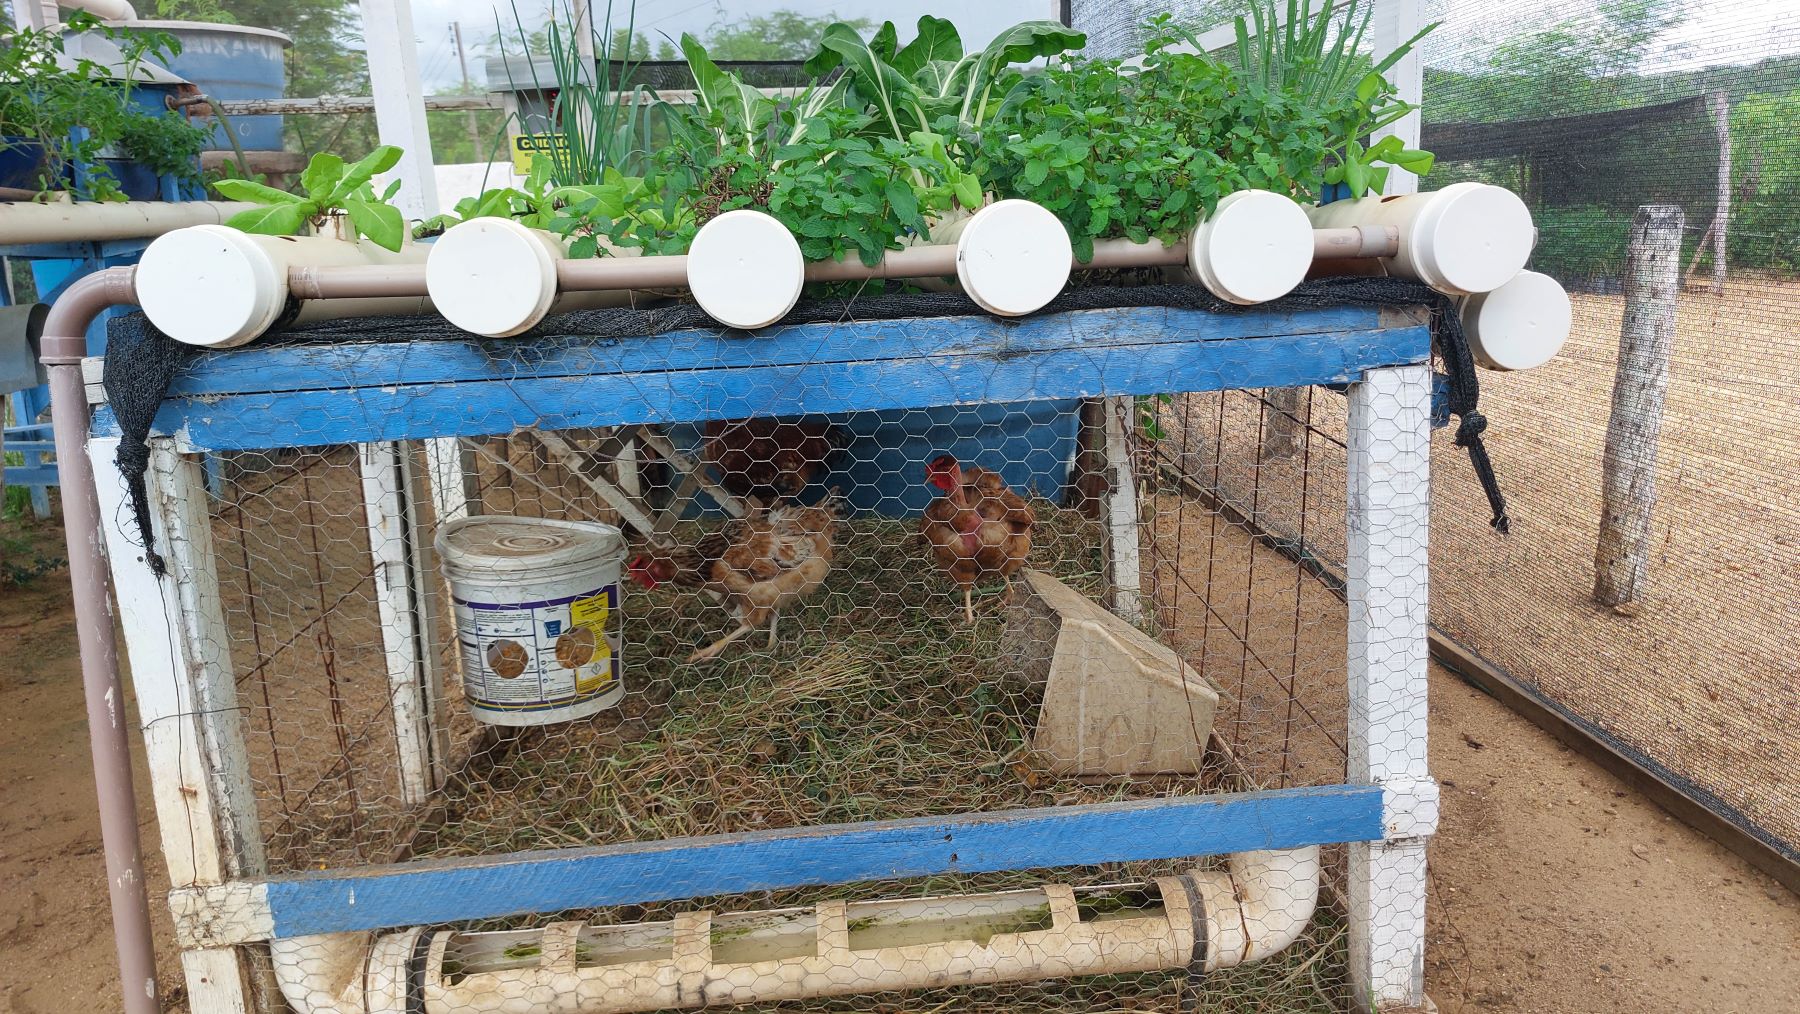 Criação de galinhas abaixo das placas de energia solar e da horta: produção de energia e alimentos sem prejudicar o bioma Caatinga (Foto: Guilherme dos Santos /Coletivo Caburé)